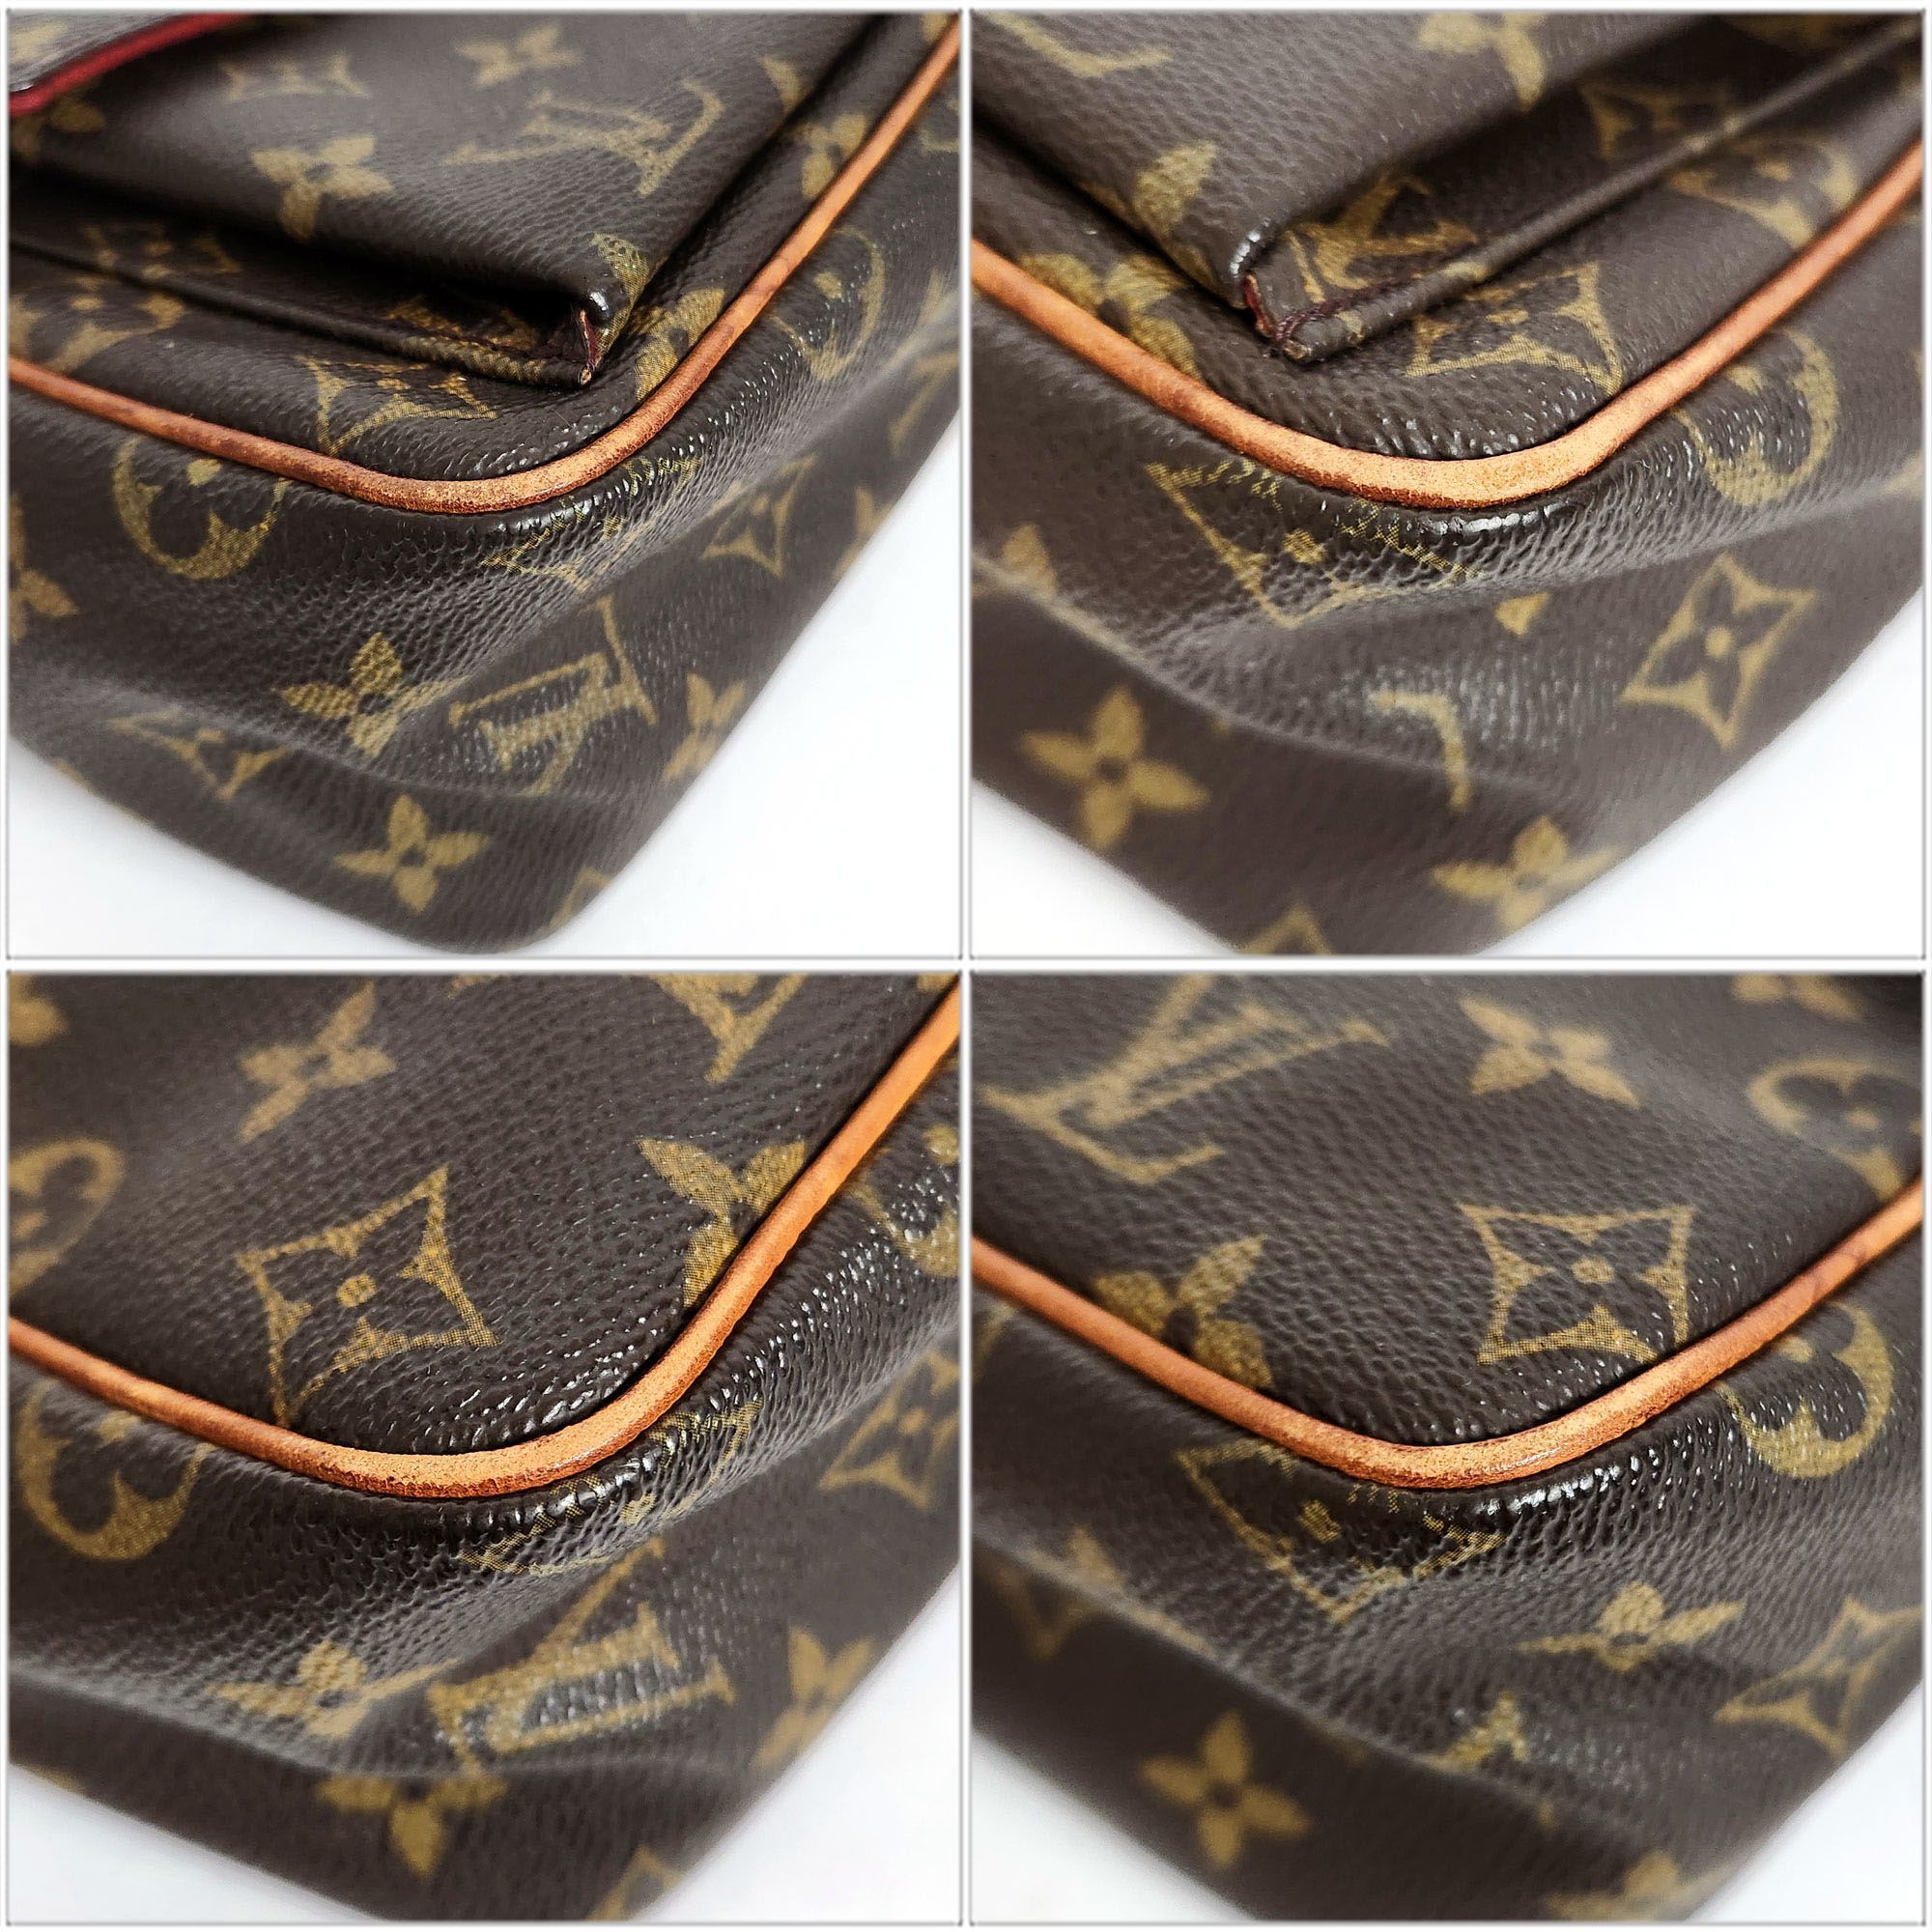 Louis Vuitton LOUISVUITTON Monogram Viva Cite PM Shoulder Bag M51165 Brown Canvas Women's